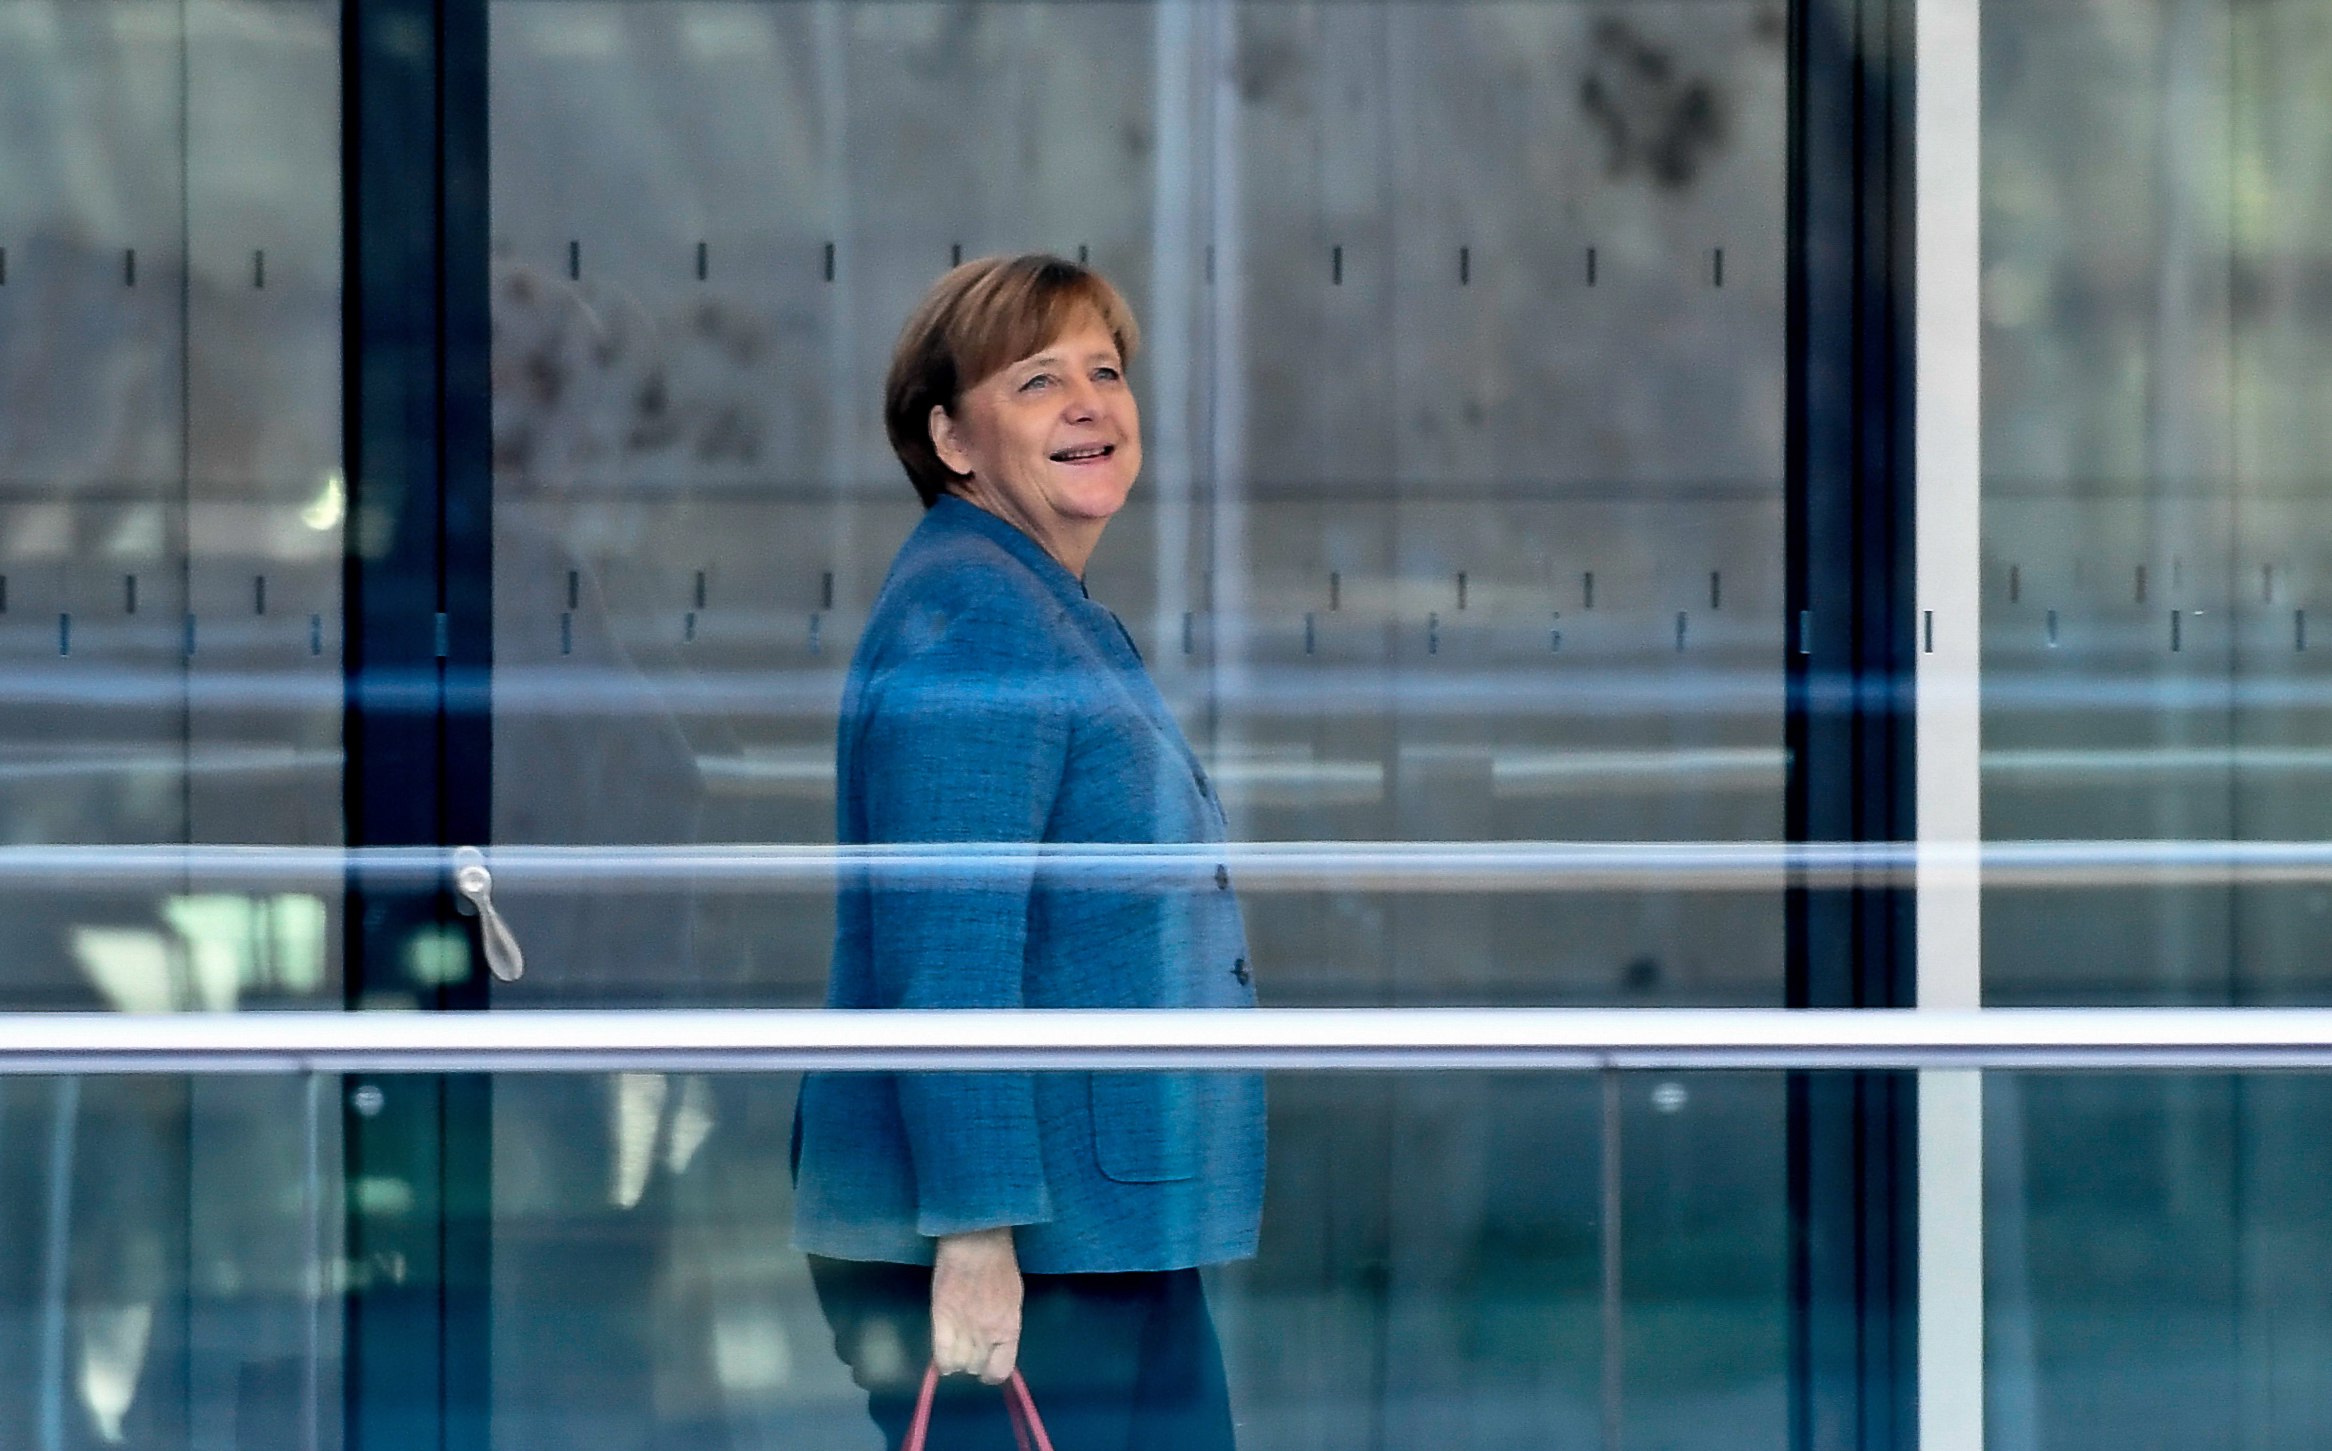 Η νέα γερμανική κυβέρνηση επιθυμεί καλές σχέσεις με Ρωσία